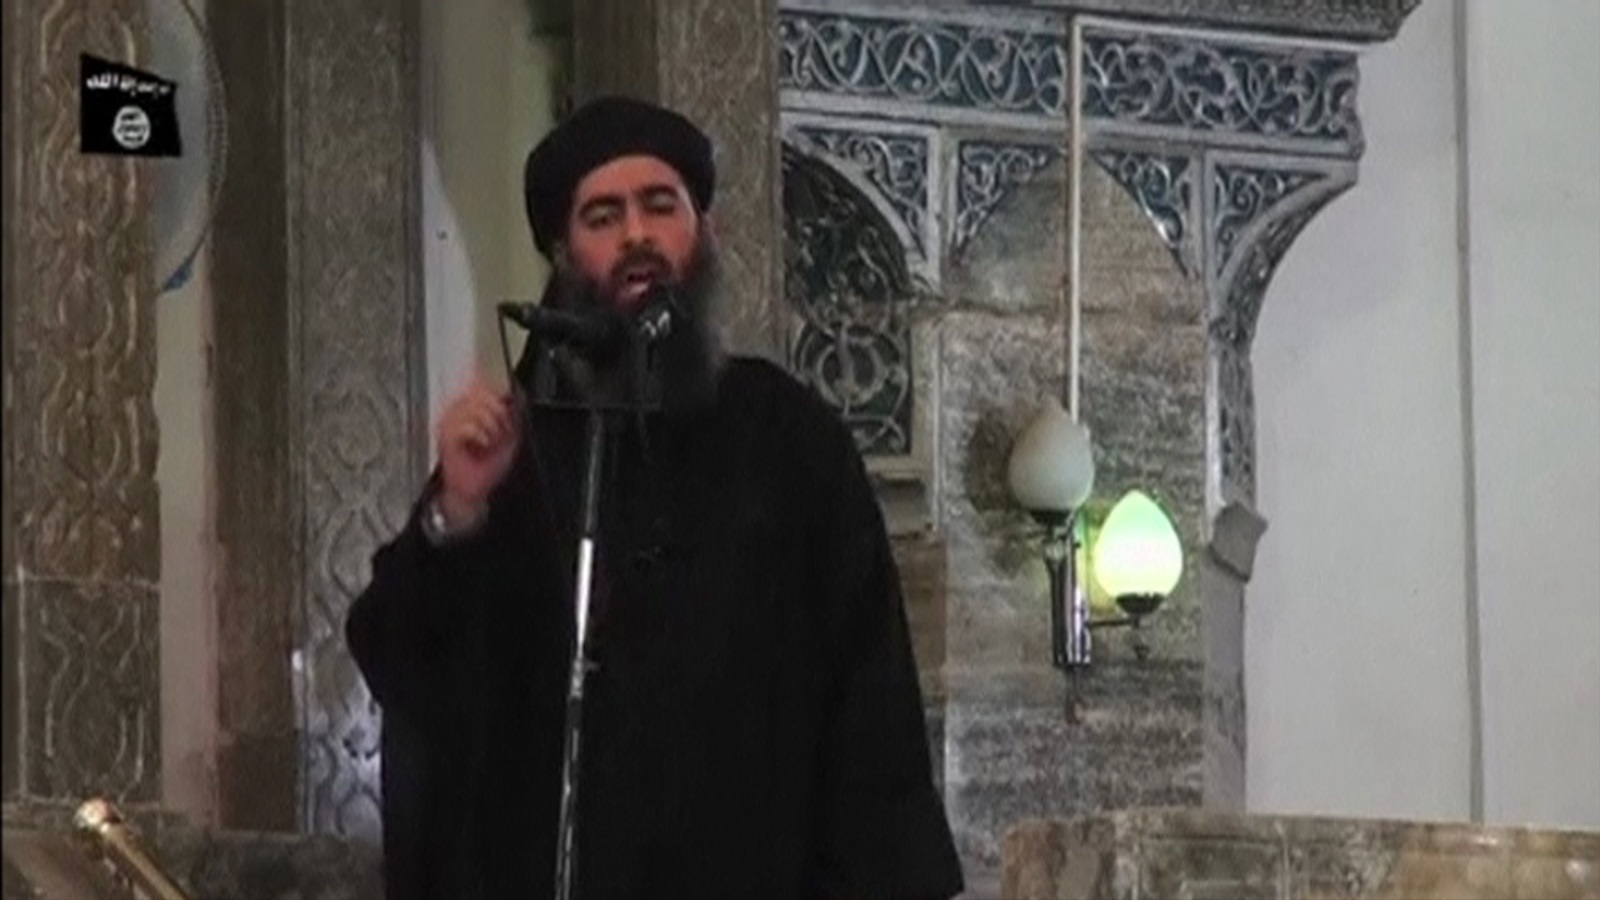 ‪أول ظهور لرئيس تنظيم الدولة أبو بكر البغدادي في مسجد بالموصل عام 2014‬ (رويترز-أرشيف)